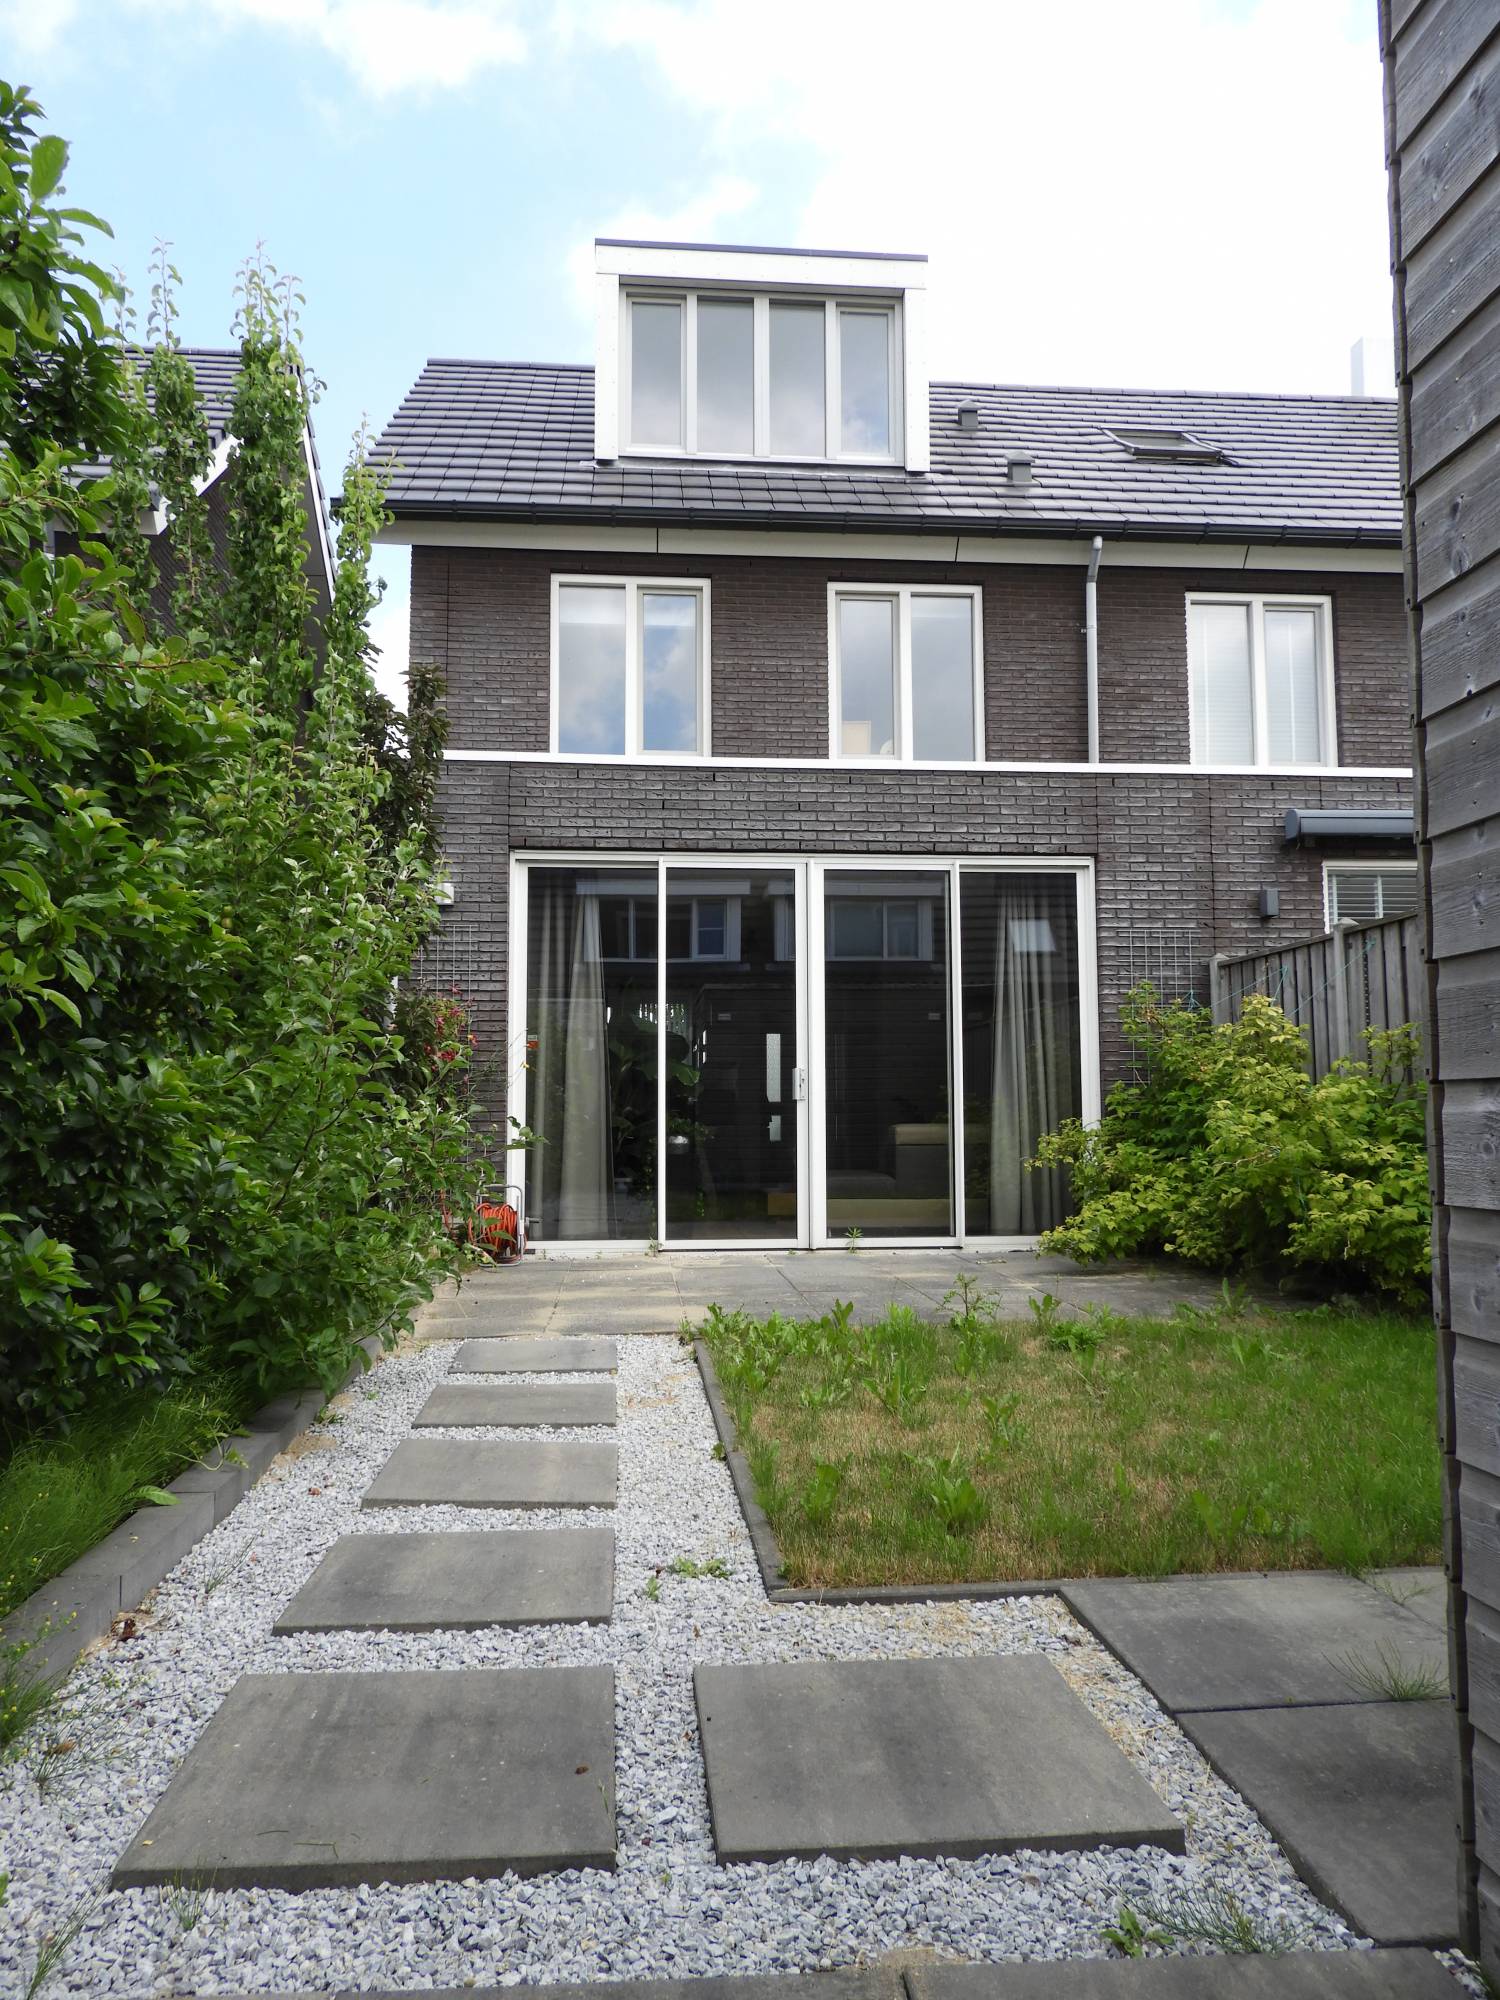 Bekijk foto 1/16 van house in Zoetermeer